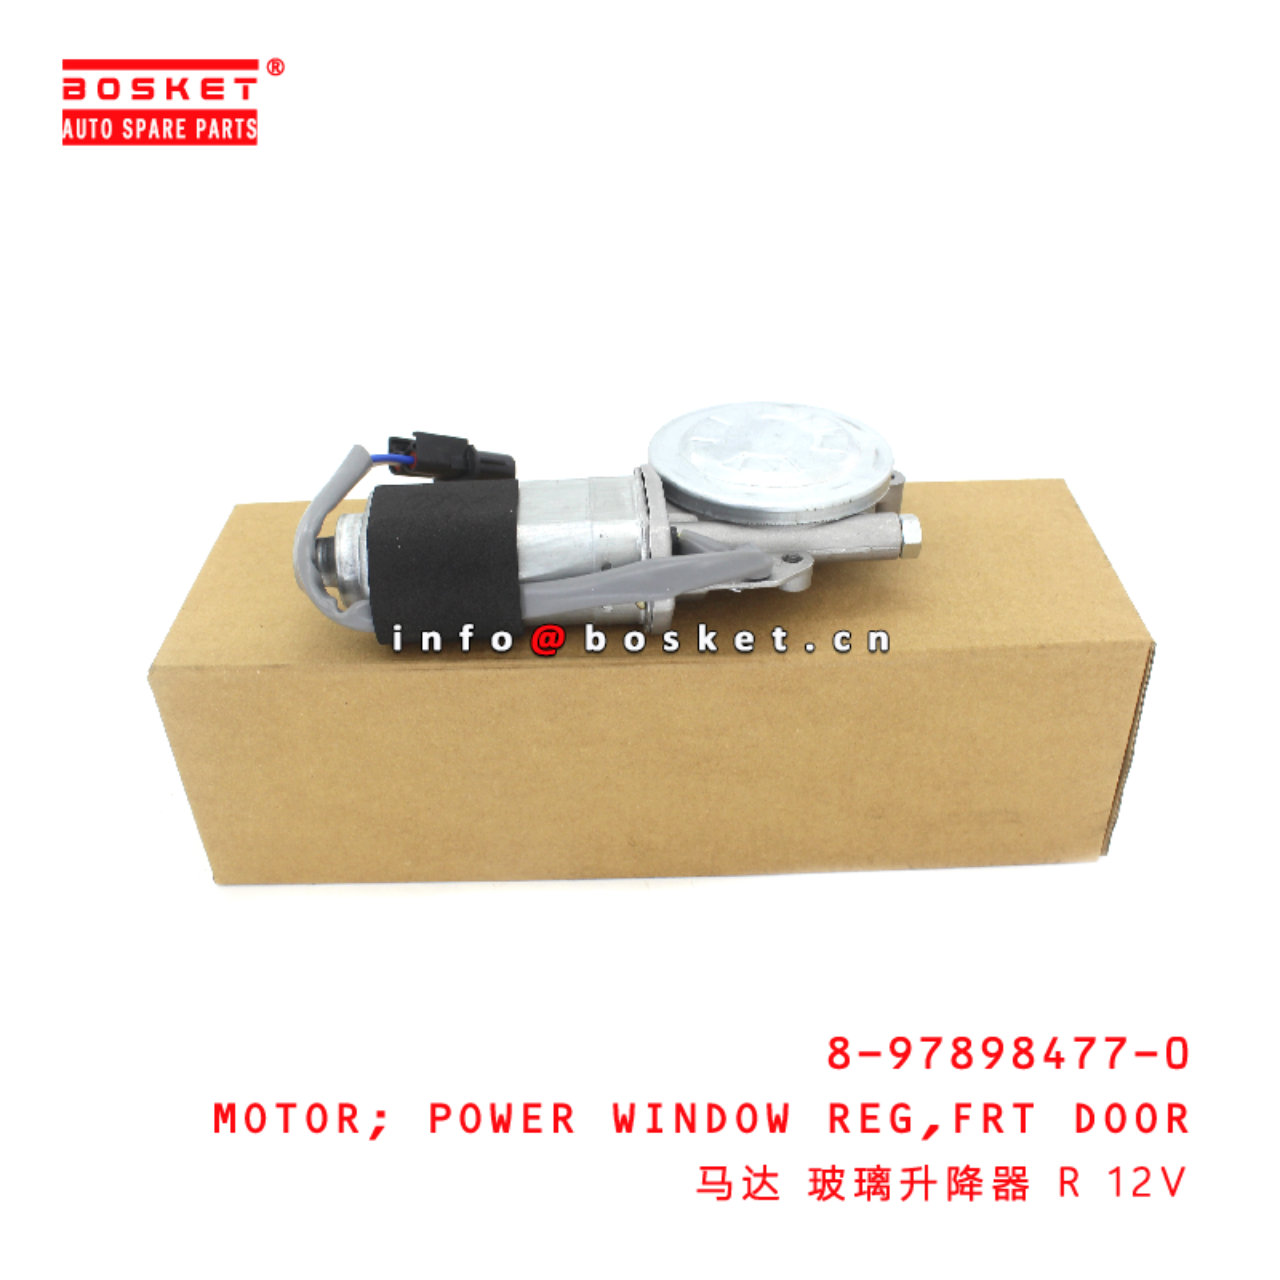 8-97898477-0 Front Door Power Window Regulator Motor suitable for ISUZU NKR77 NKR55 4JH1 4JB1 897898